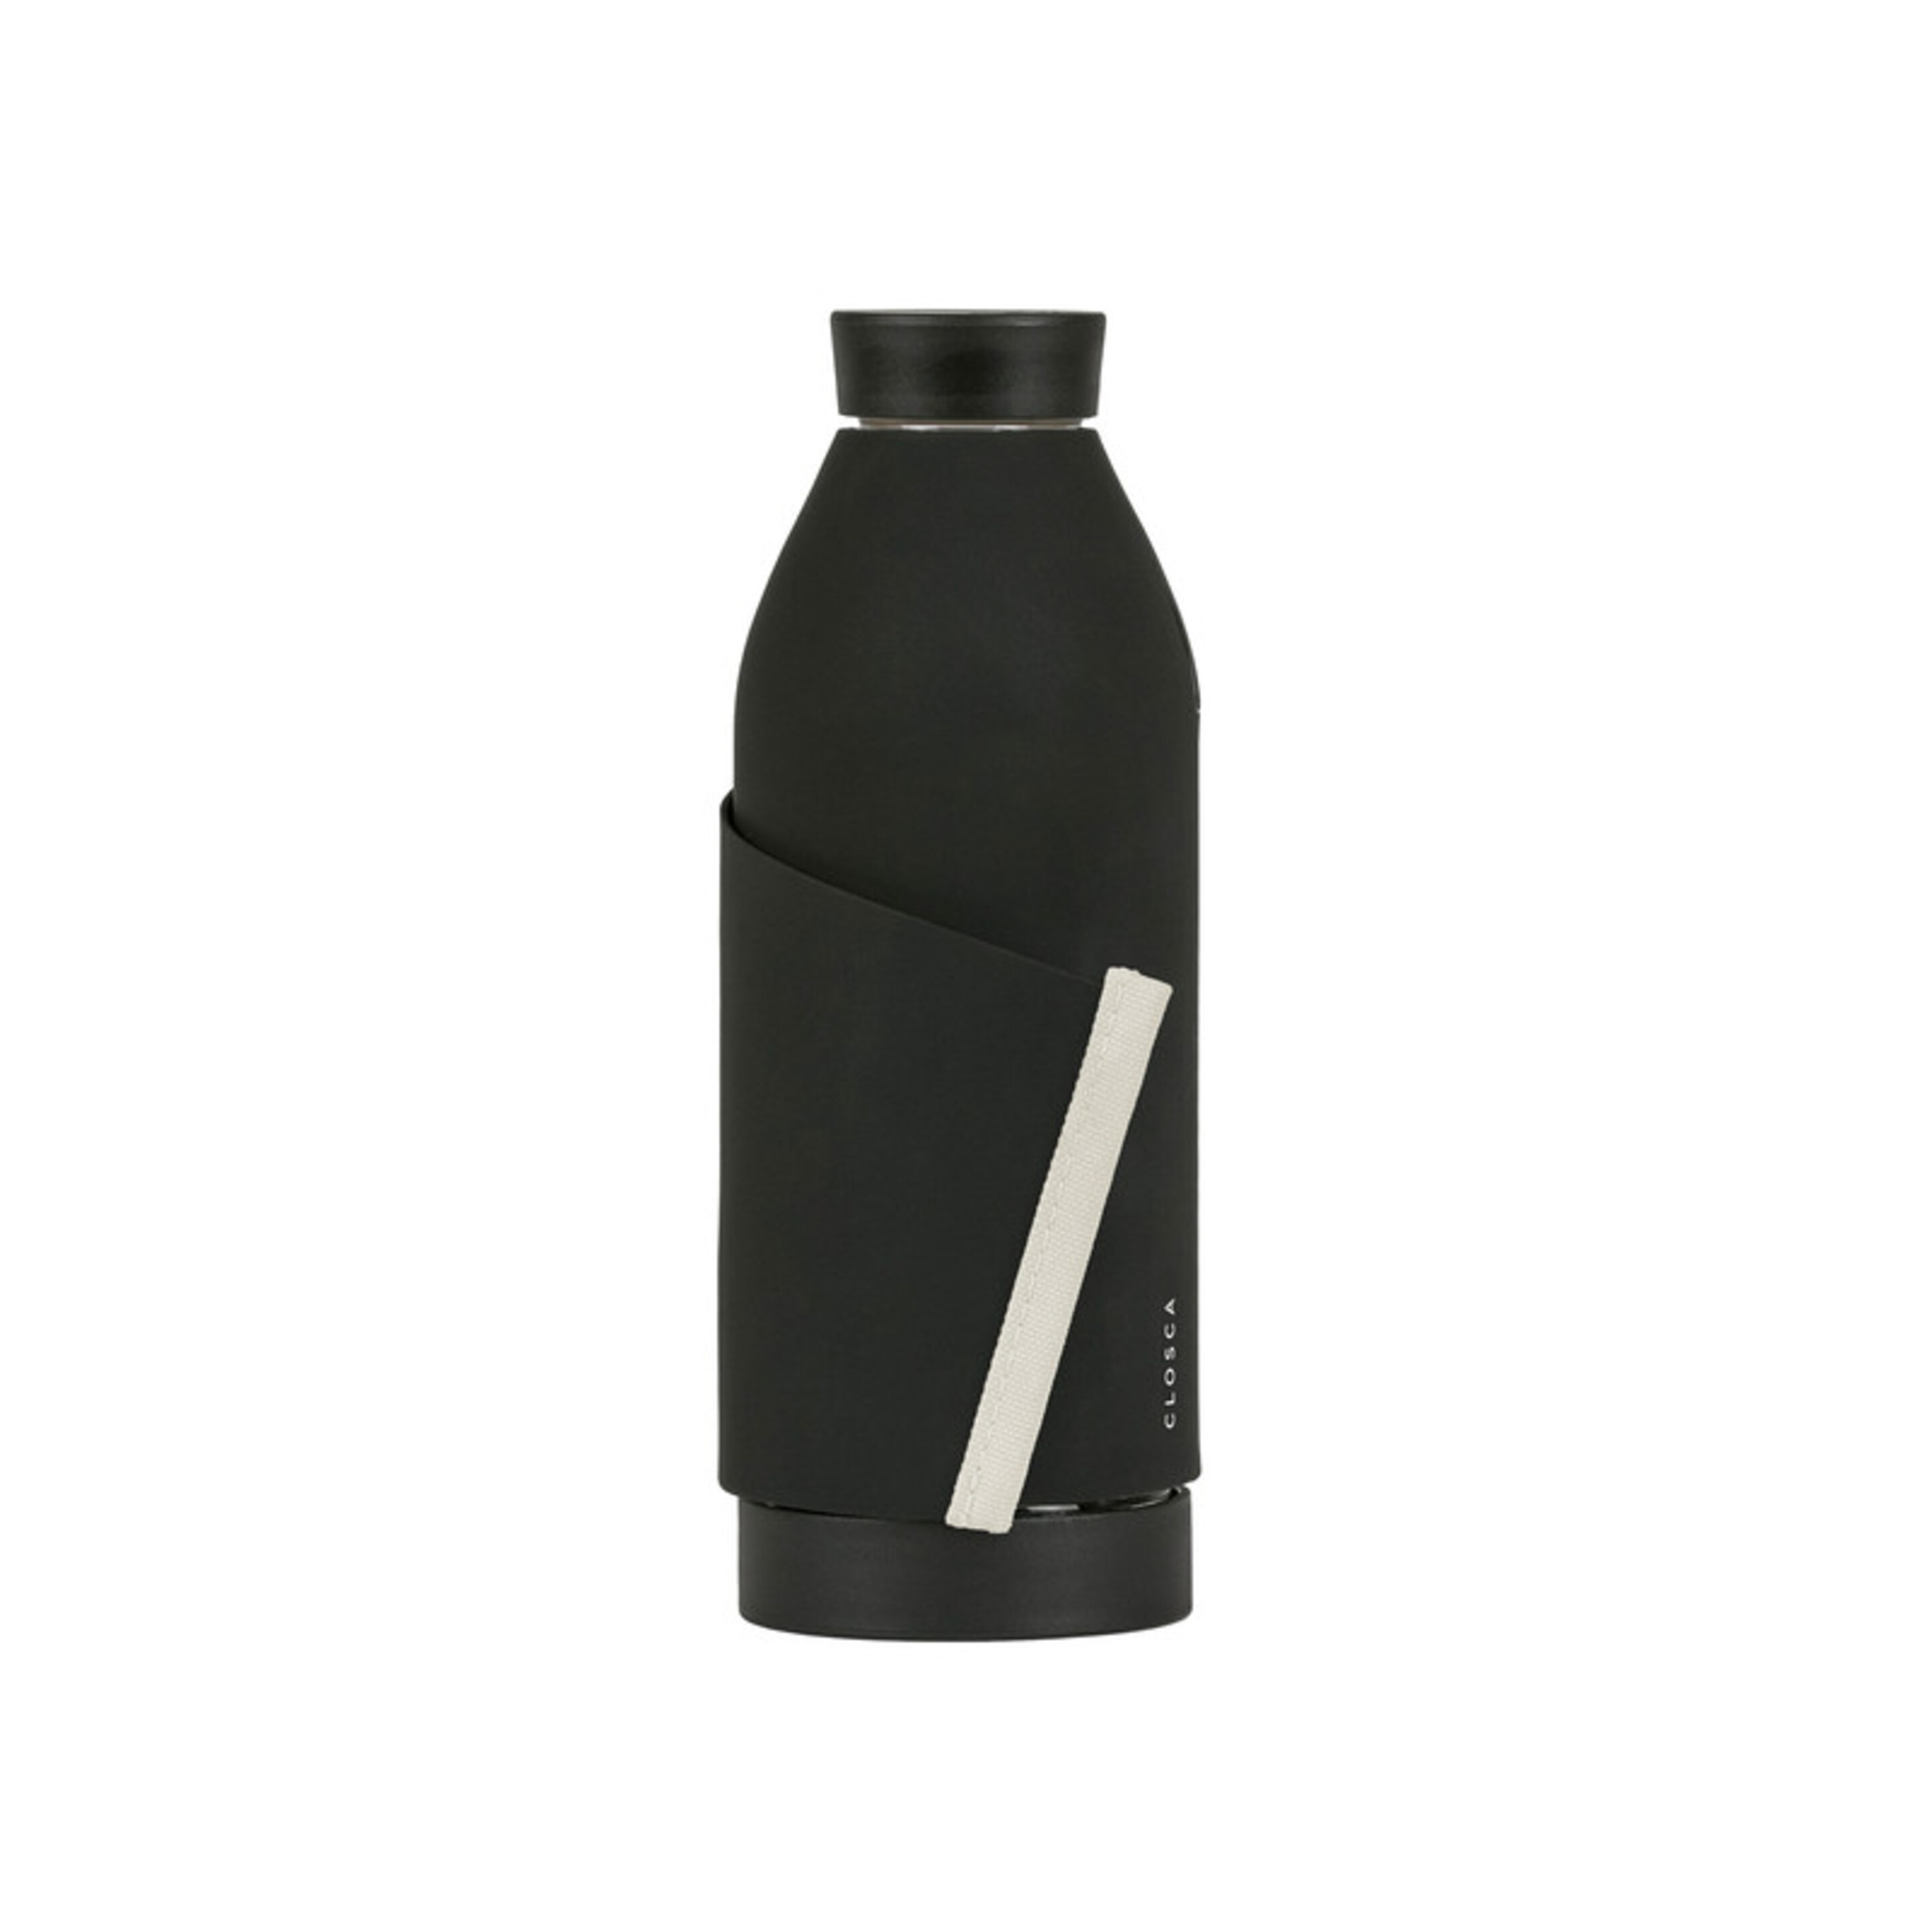 Botella De Agua Clásica De Vidrio De 420 Ml - Negro/Blanco - Doble Apertura Y Sistema De Agarre.  MKP